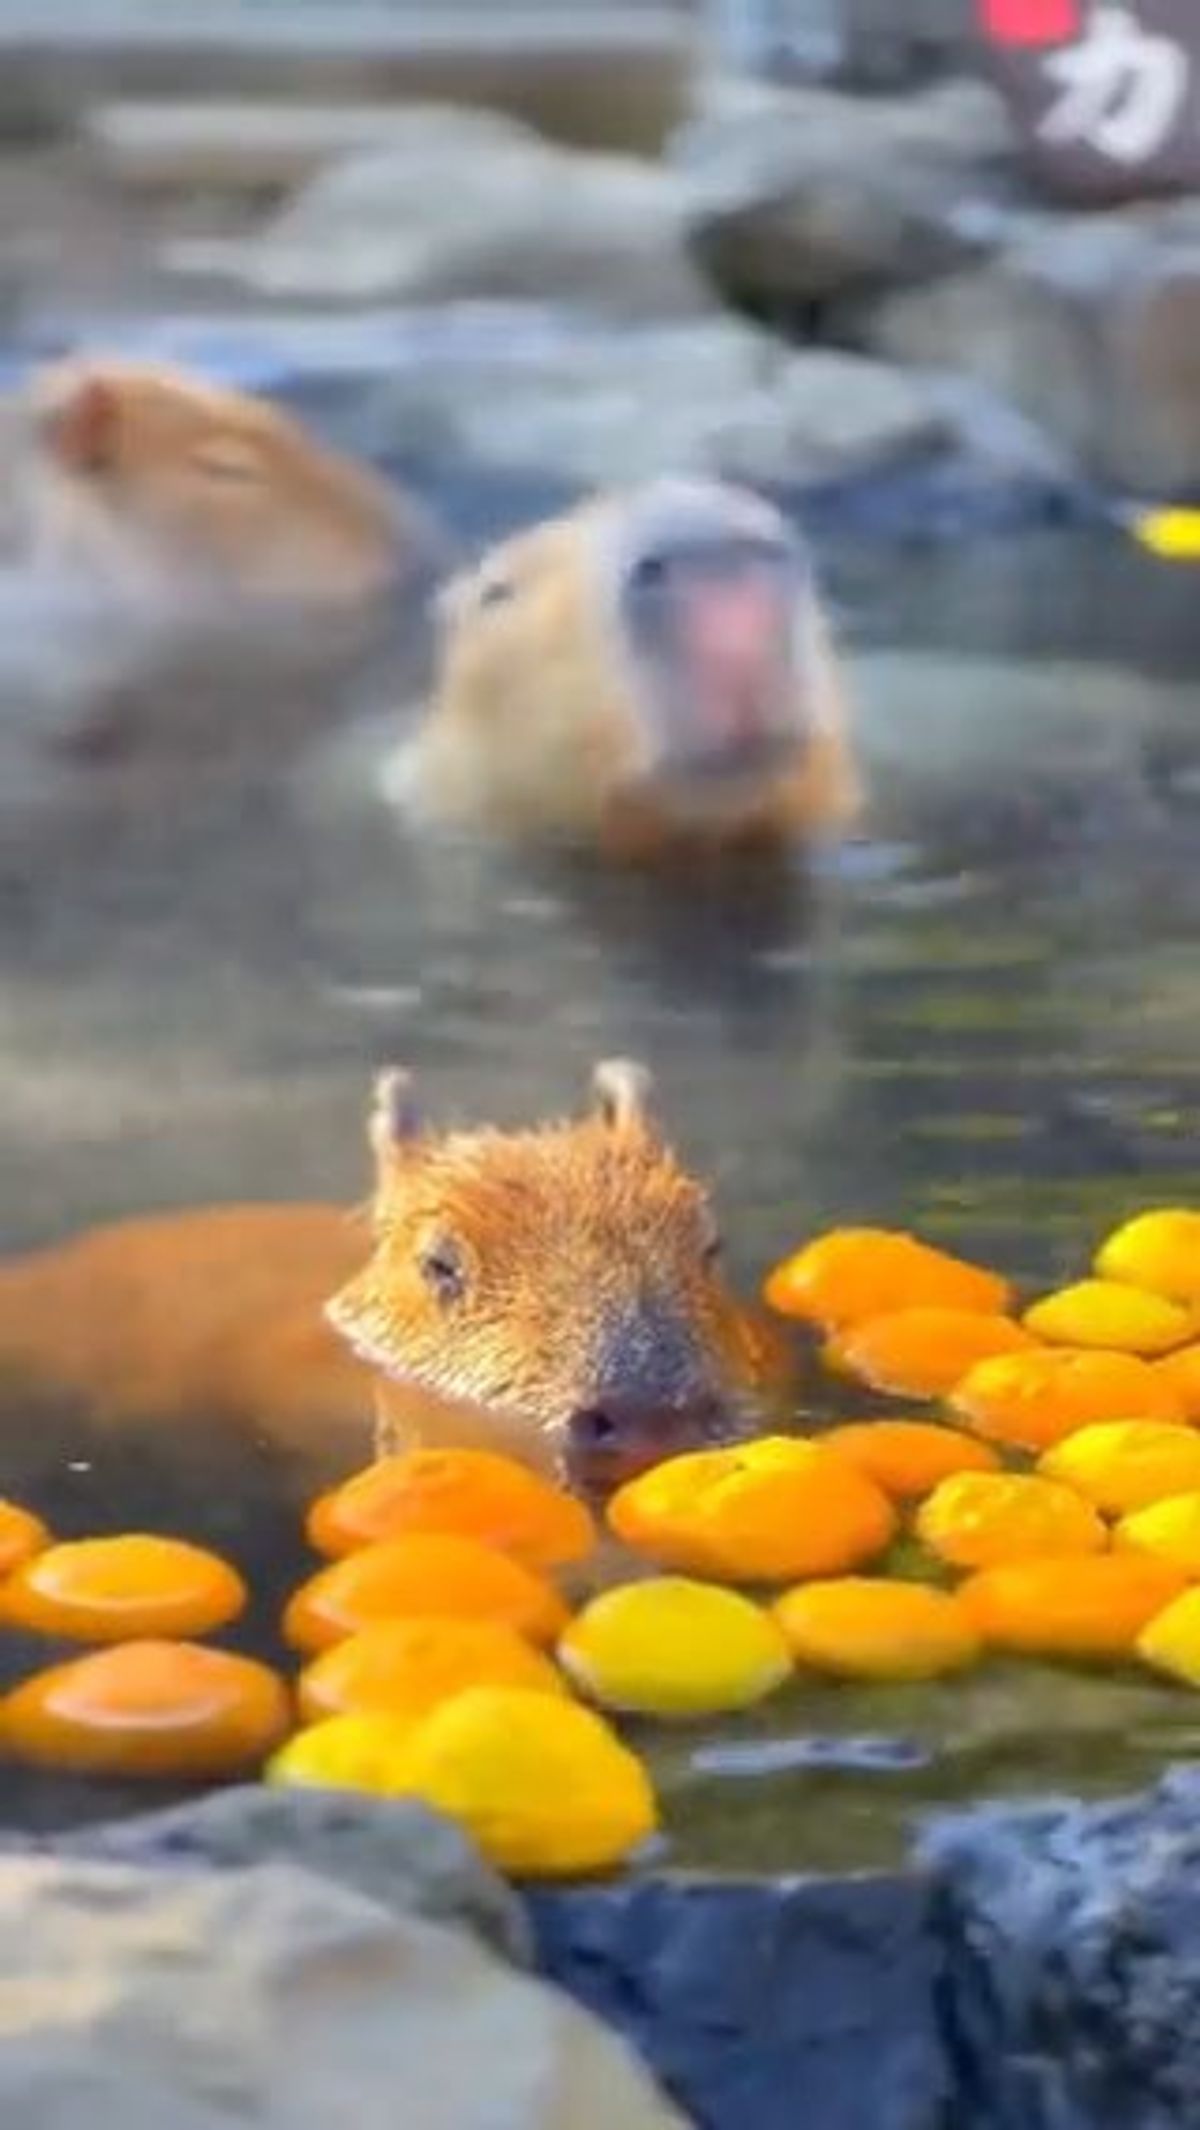 Famiglia di capibara si rigenera nell'acqua fumante, che goduria! | video